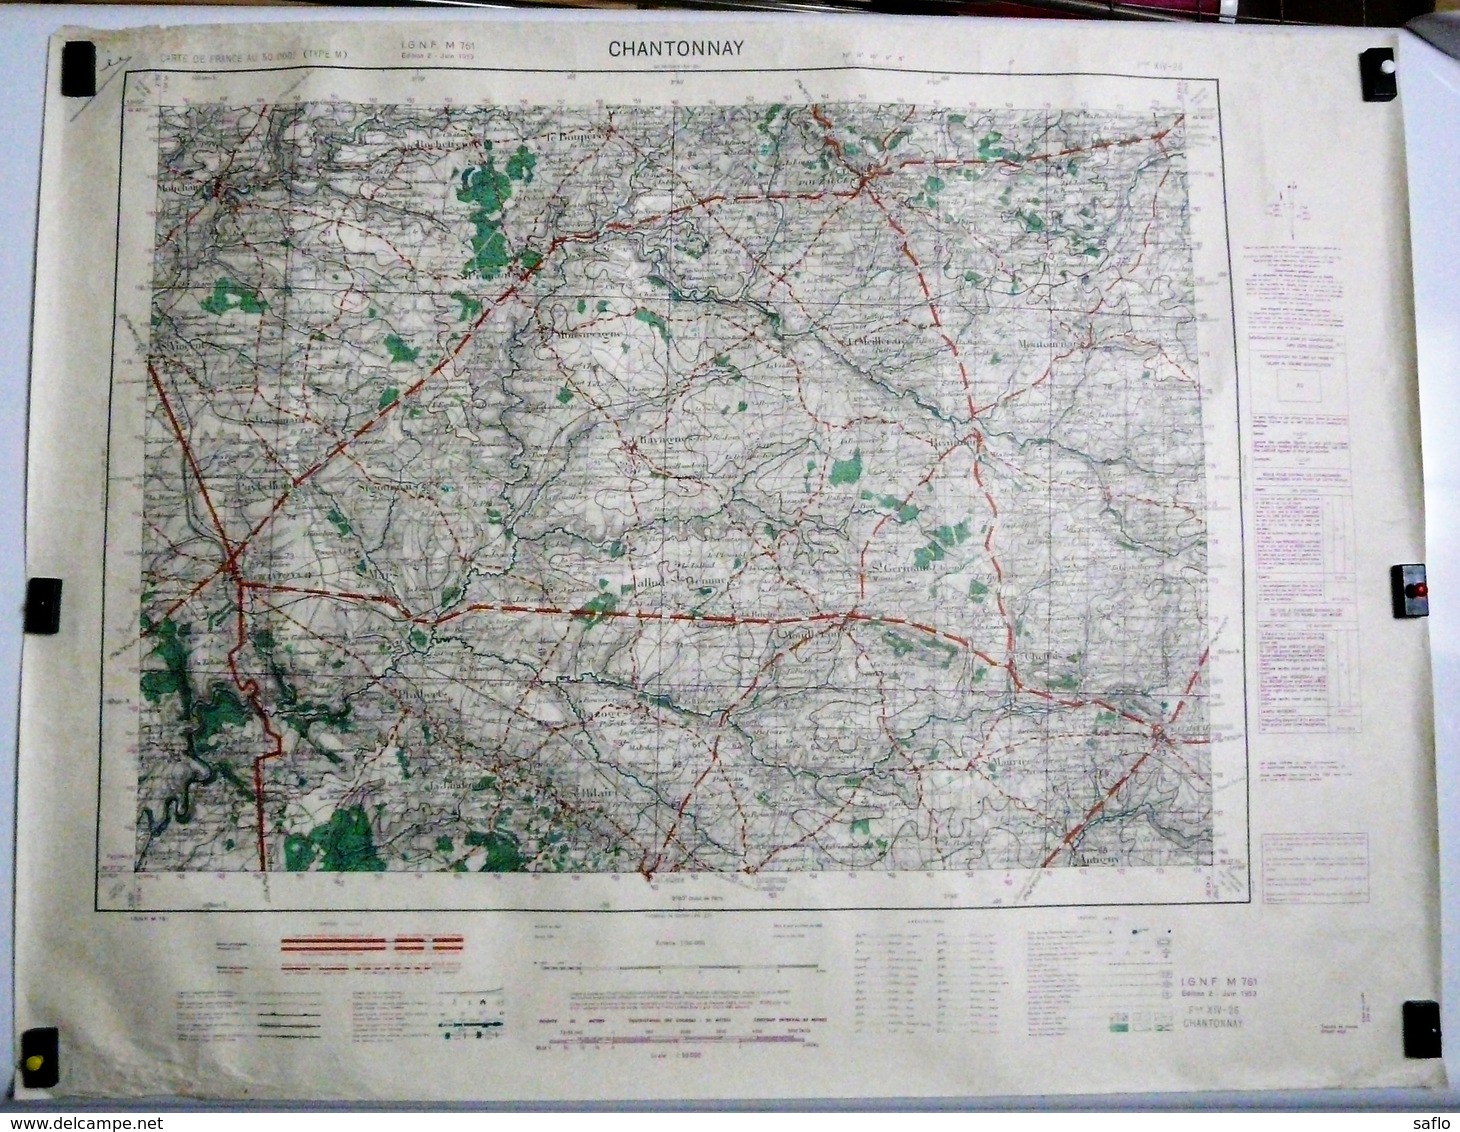 Carte Etat Major Chantonnay (Vendée) Type M - 1/50000ème Feuille XIV - 26  Institut Géographique National (IGNF) 1953 - Topographical Maps